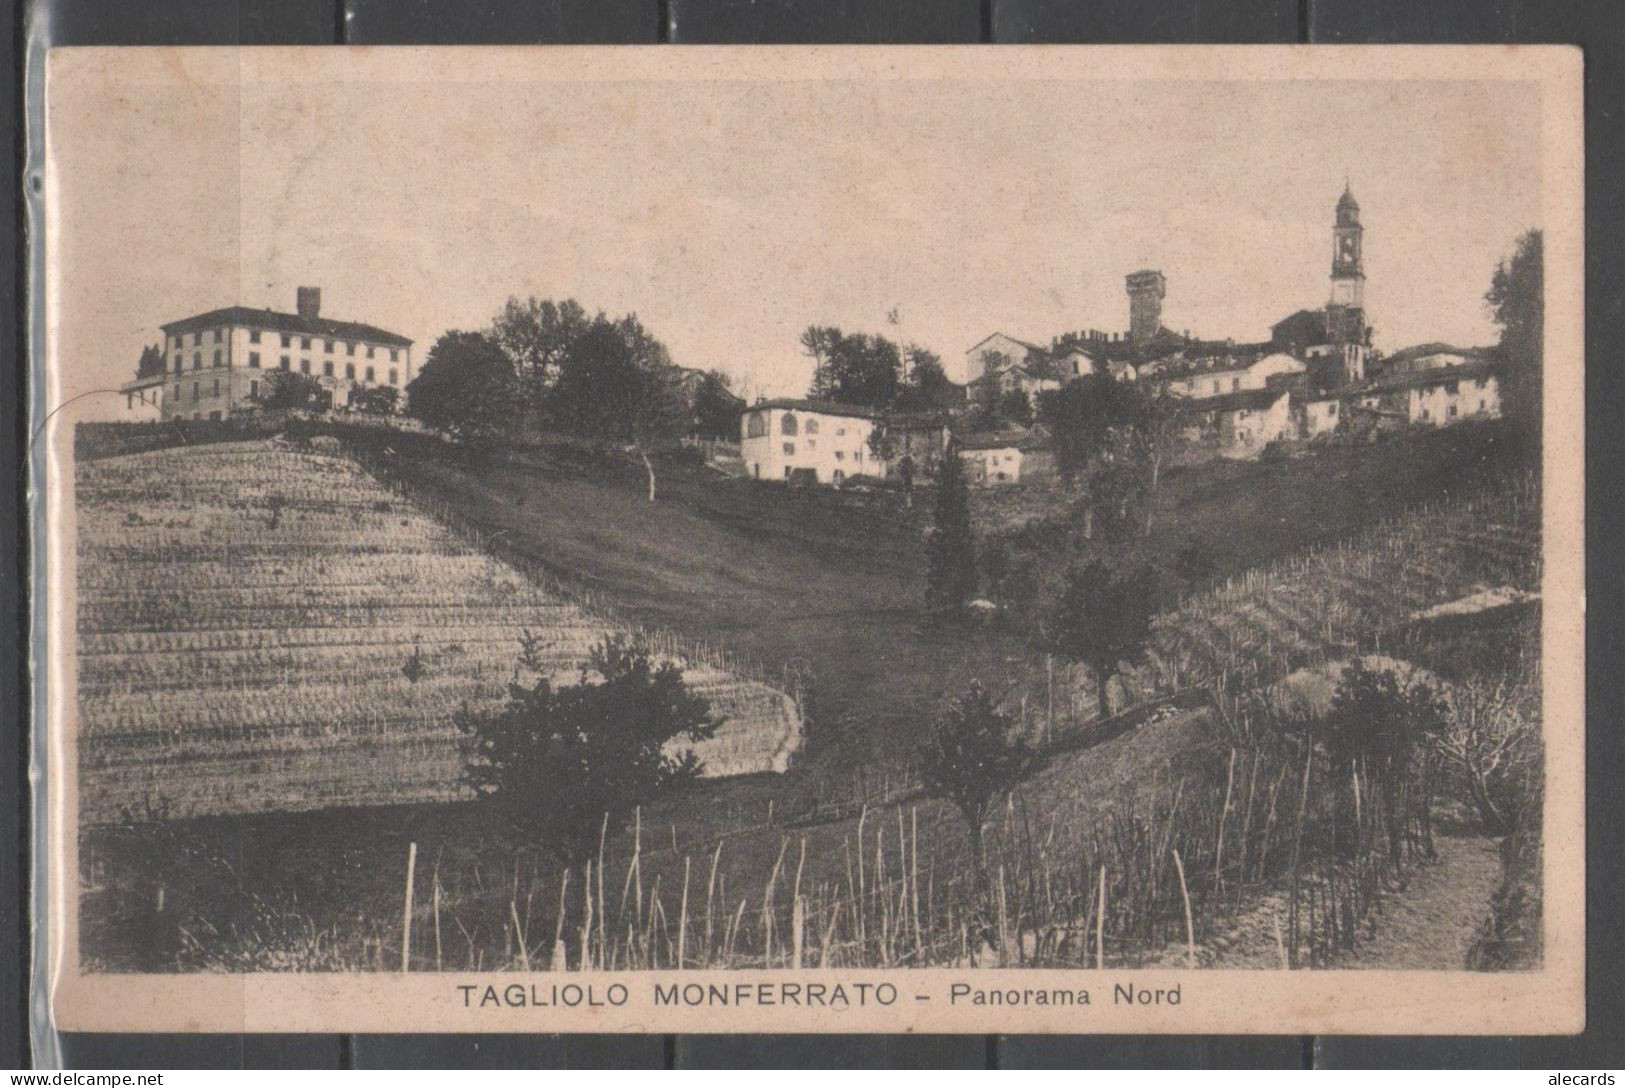 Tagliolo Monferrato - Panorama Nord - Alessandria